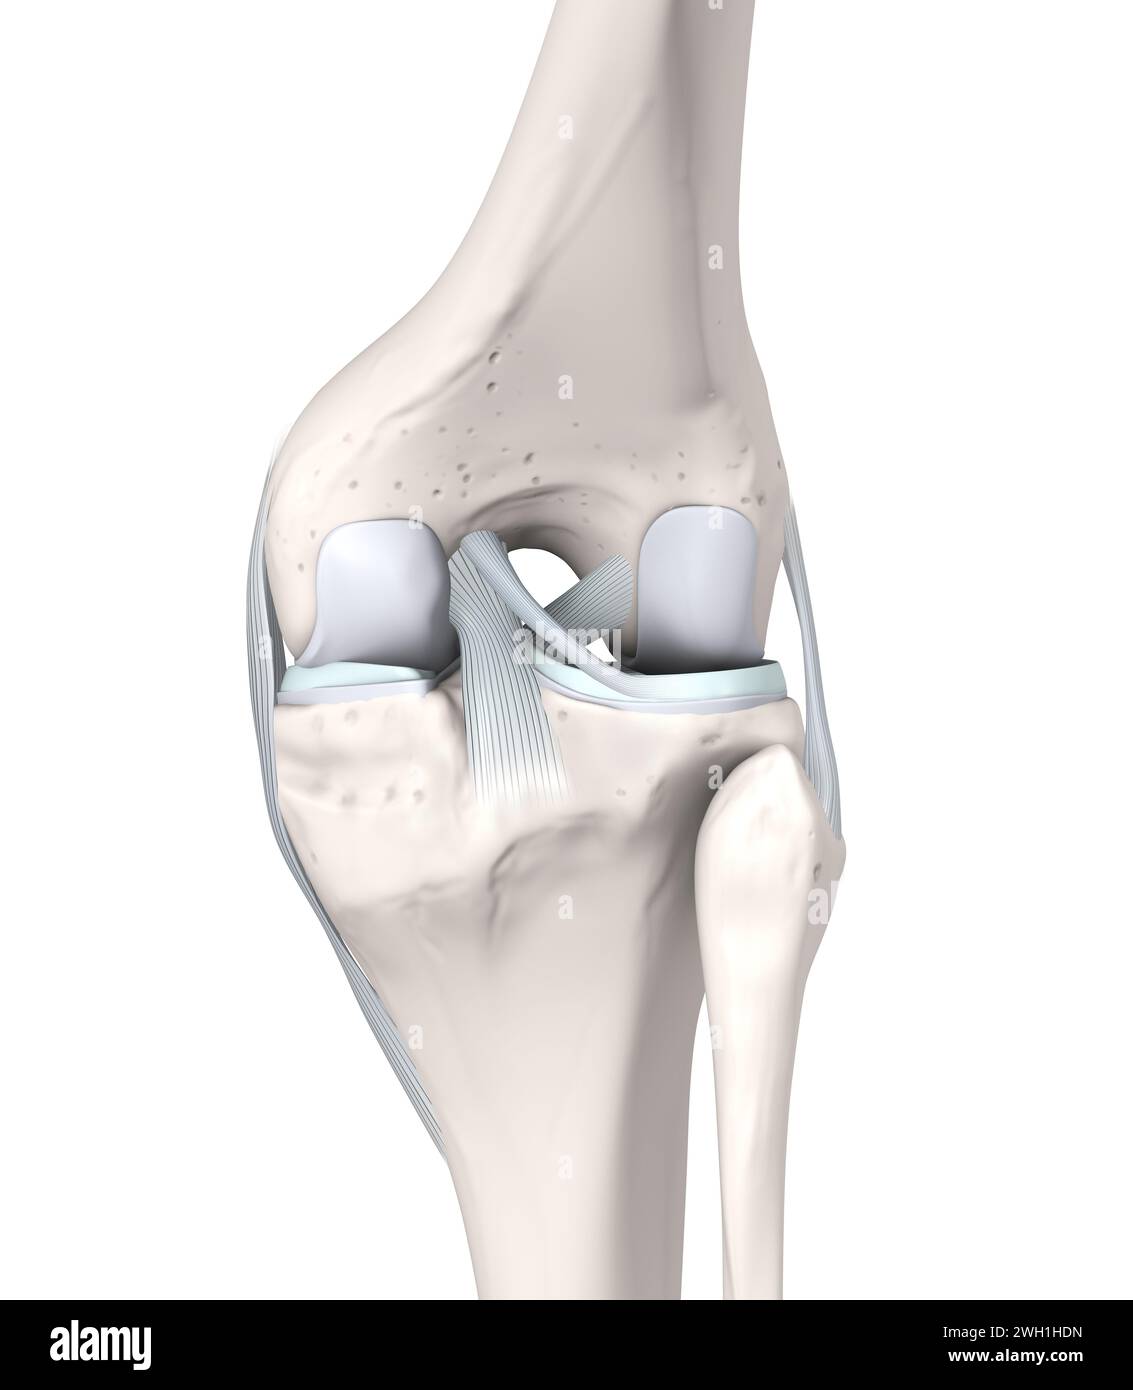 Illustrazione 3D che mostra ossa, menischi, cartilagine articolare di un'articolazione del ginocchio. Vista laterale Foto Stock